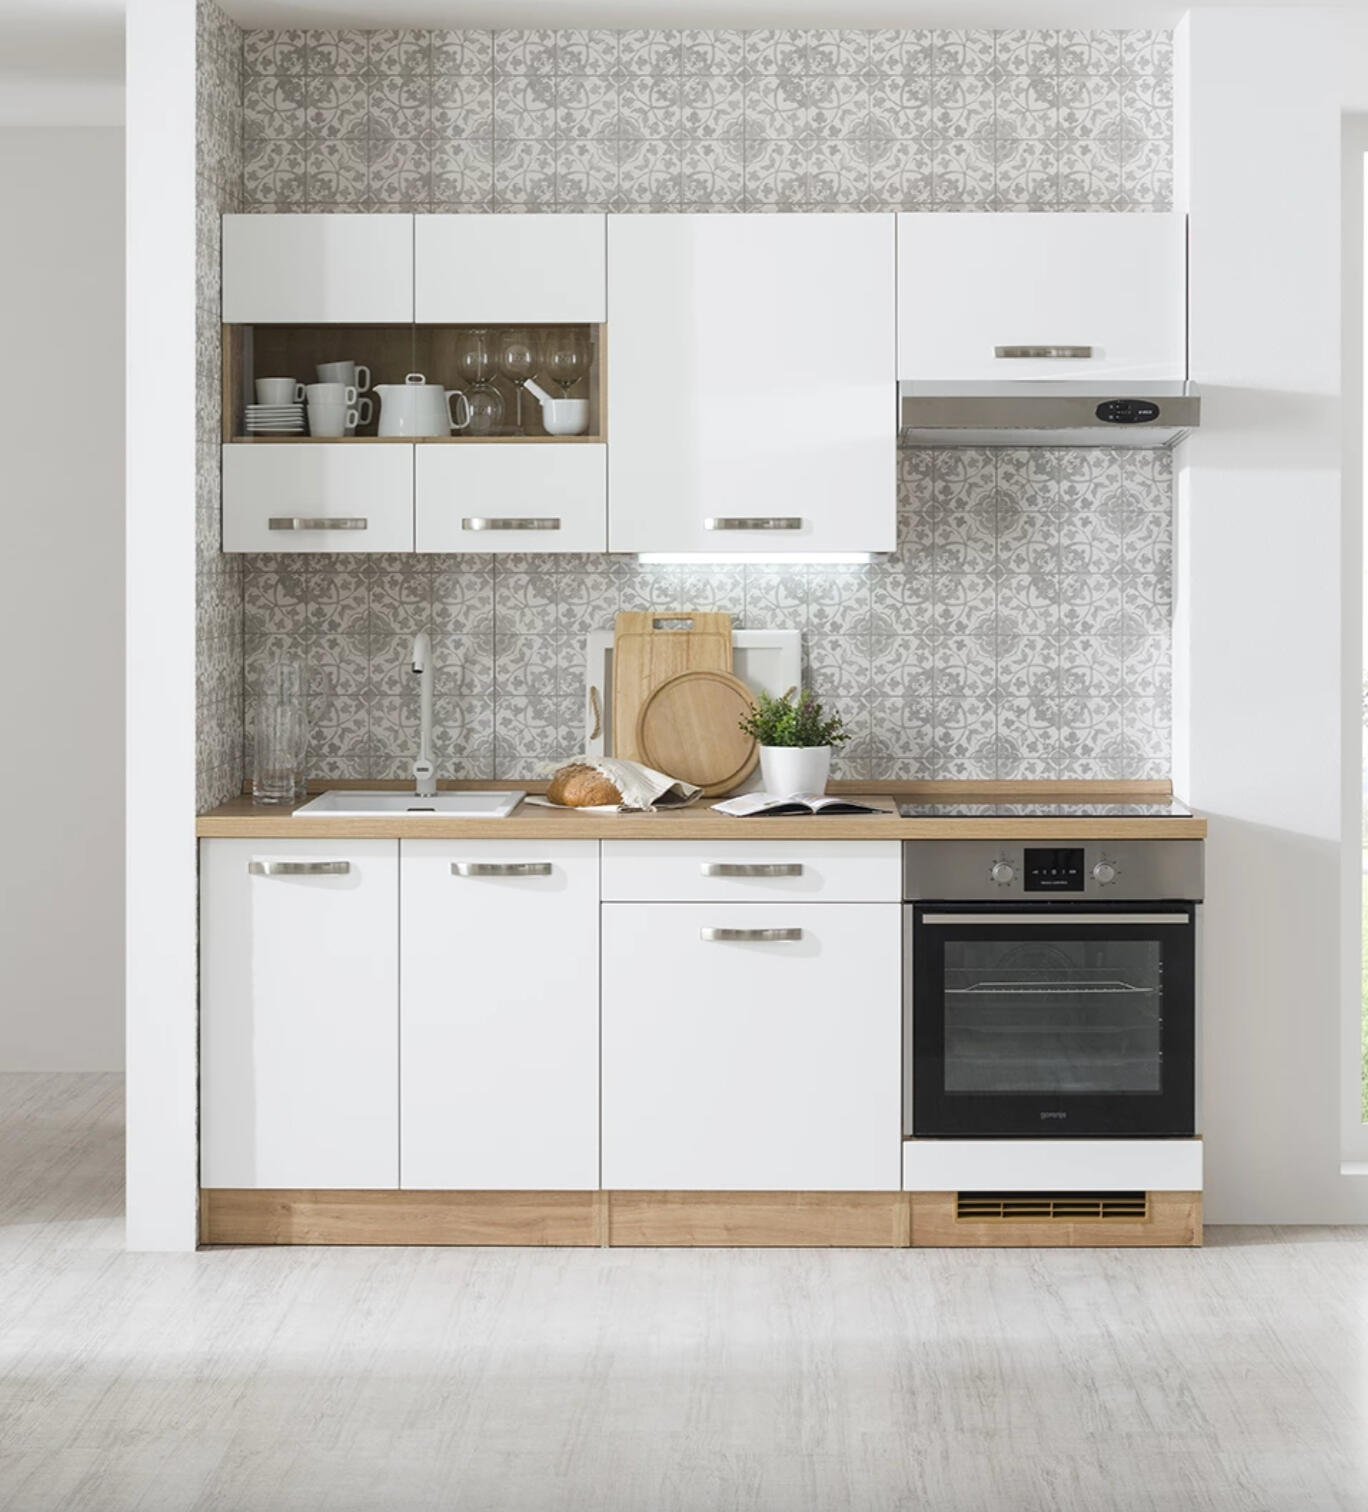 Minimalistická biela kuchyňa s drevenými detailmi a vzorovaným dlaždicovým obkladom.